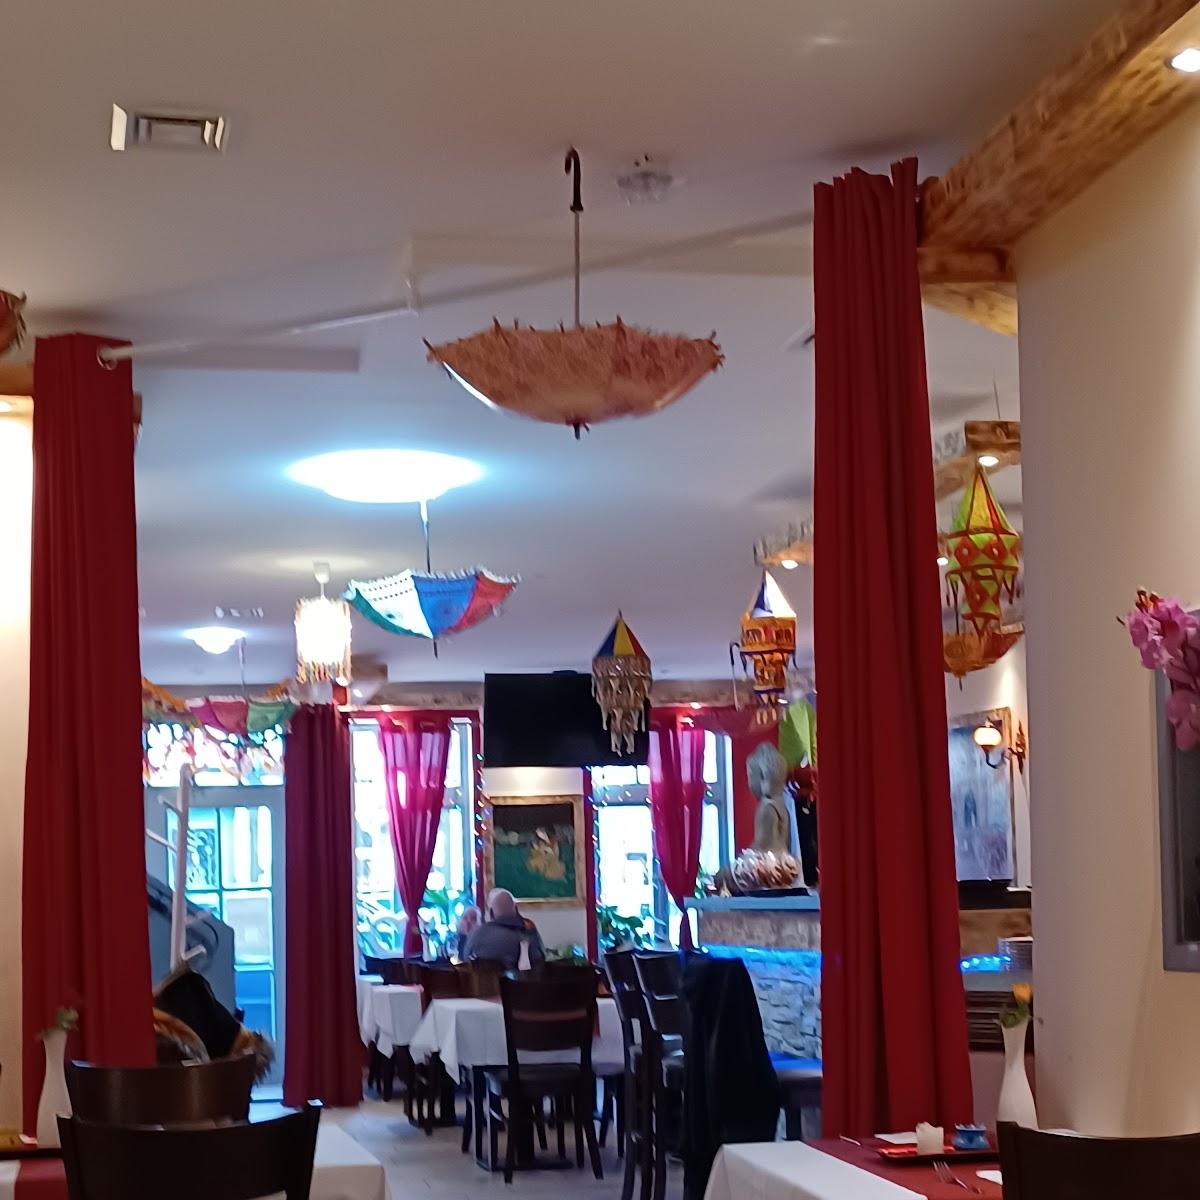 Restaurant "Bollywood Dinner" in Salzwedel